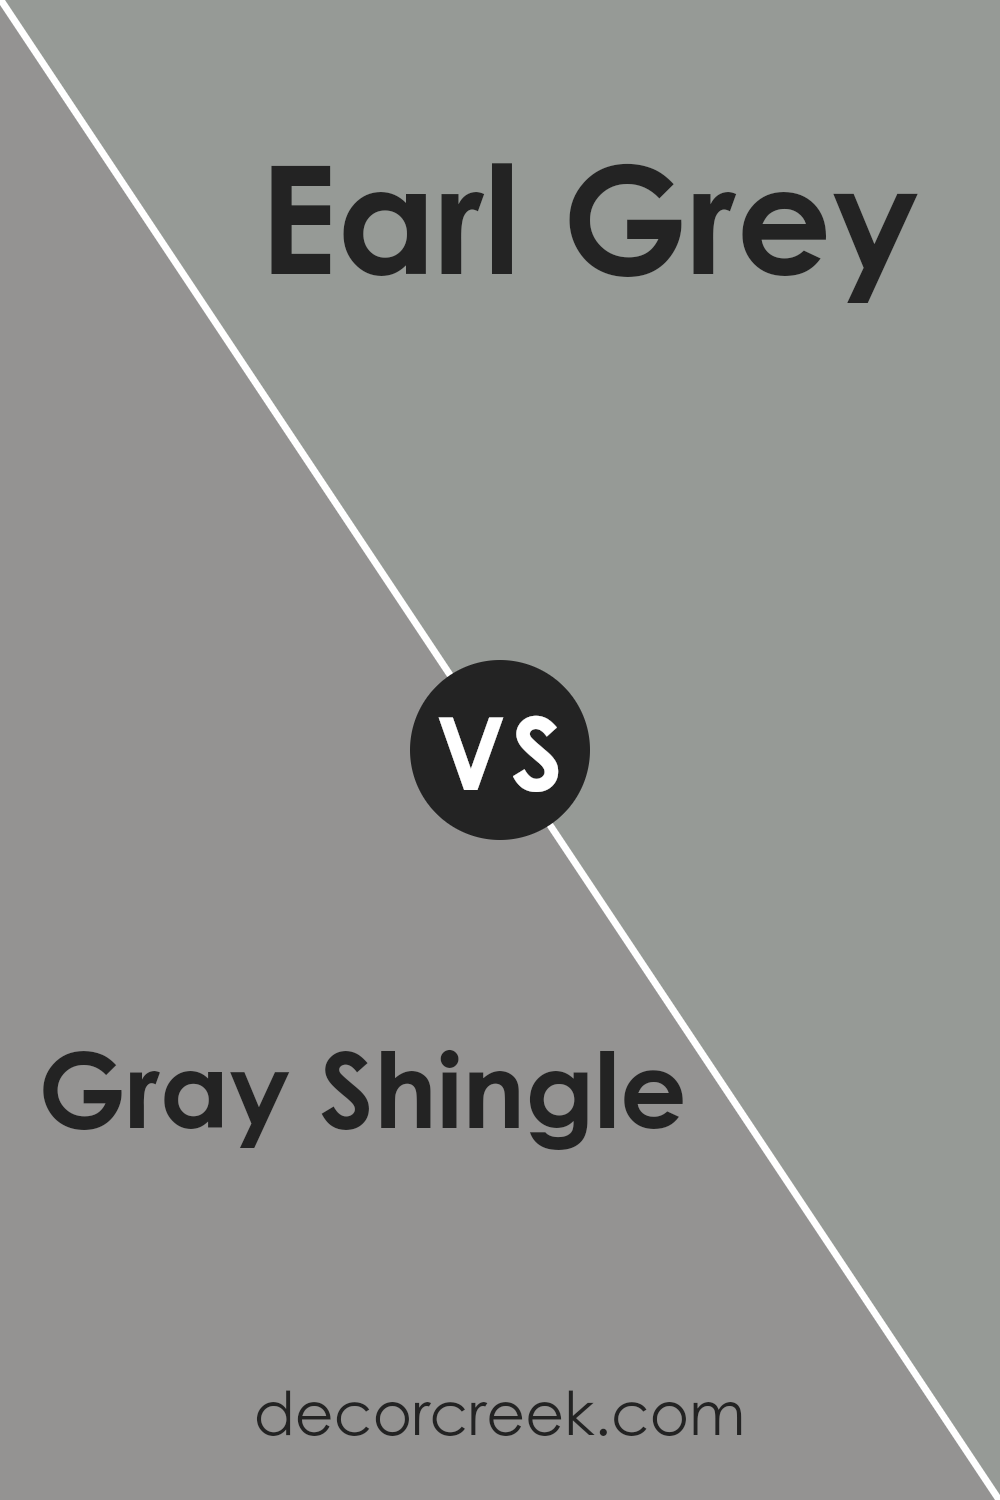 gray_shingle_sw_7670_vs_earl_grey_sw_7660